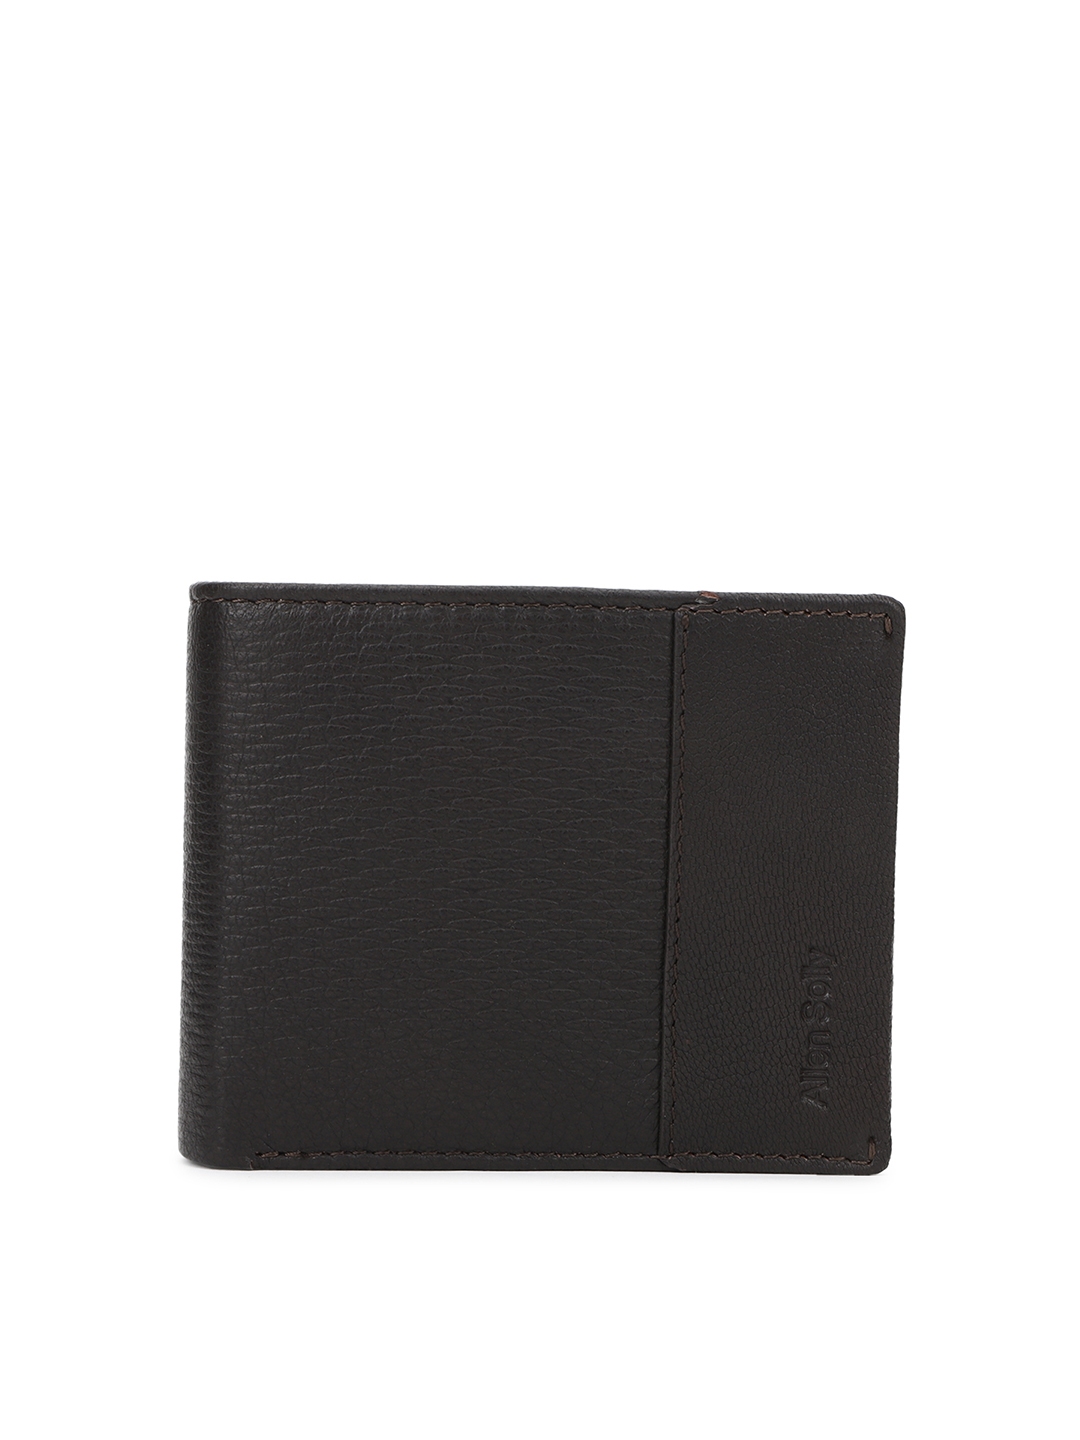 Buy Allen Solly Men Black Leather Two Fold Wallet - Wallets for Men ...